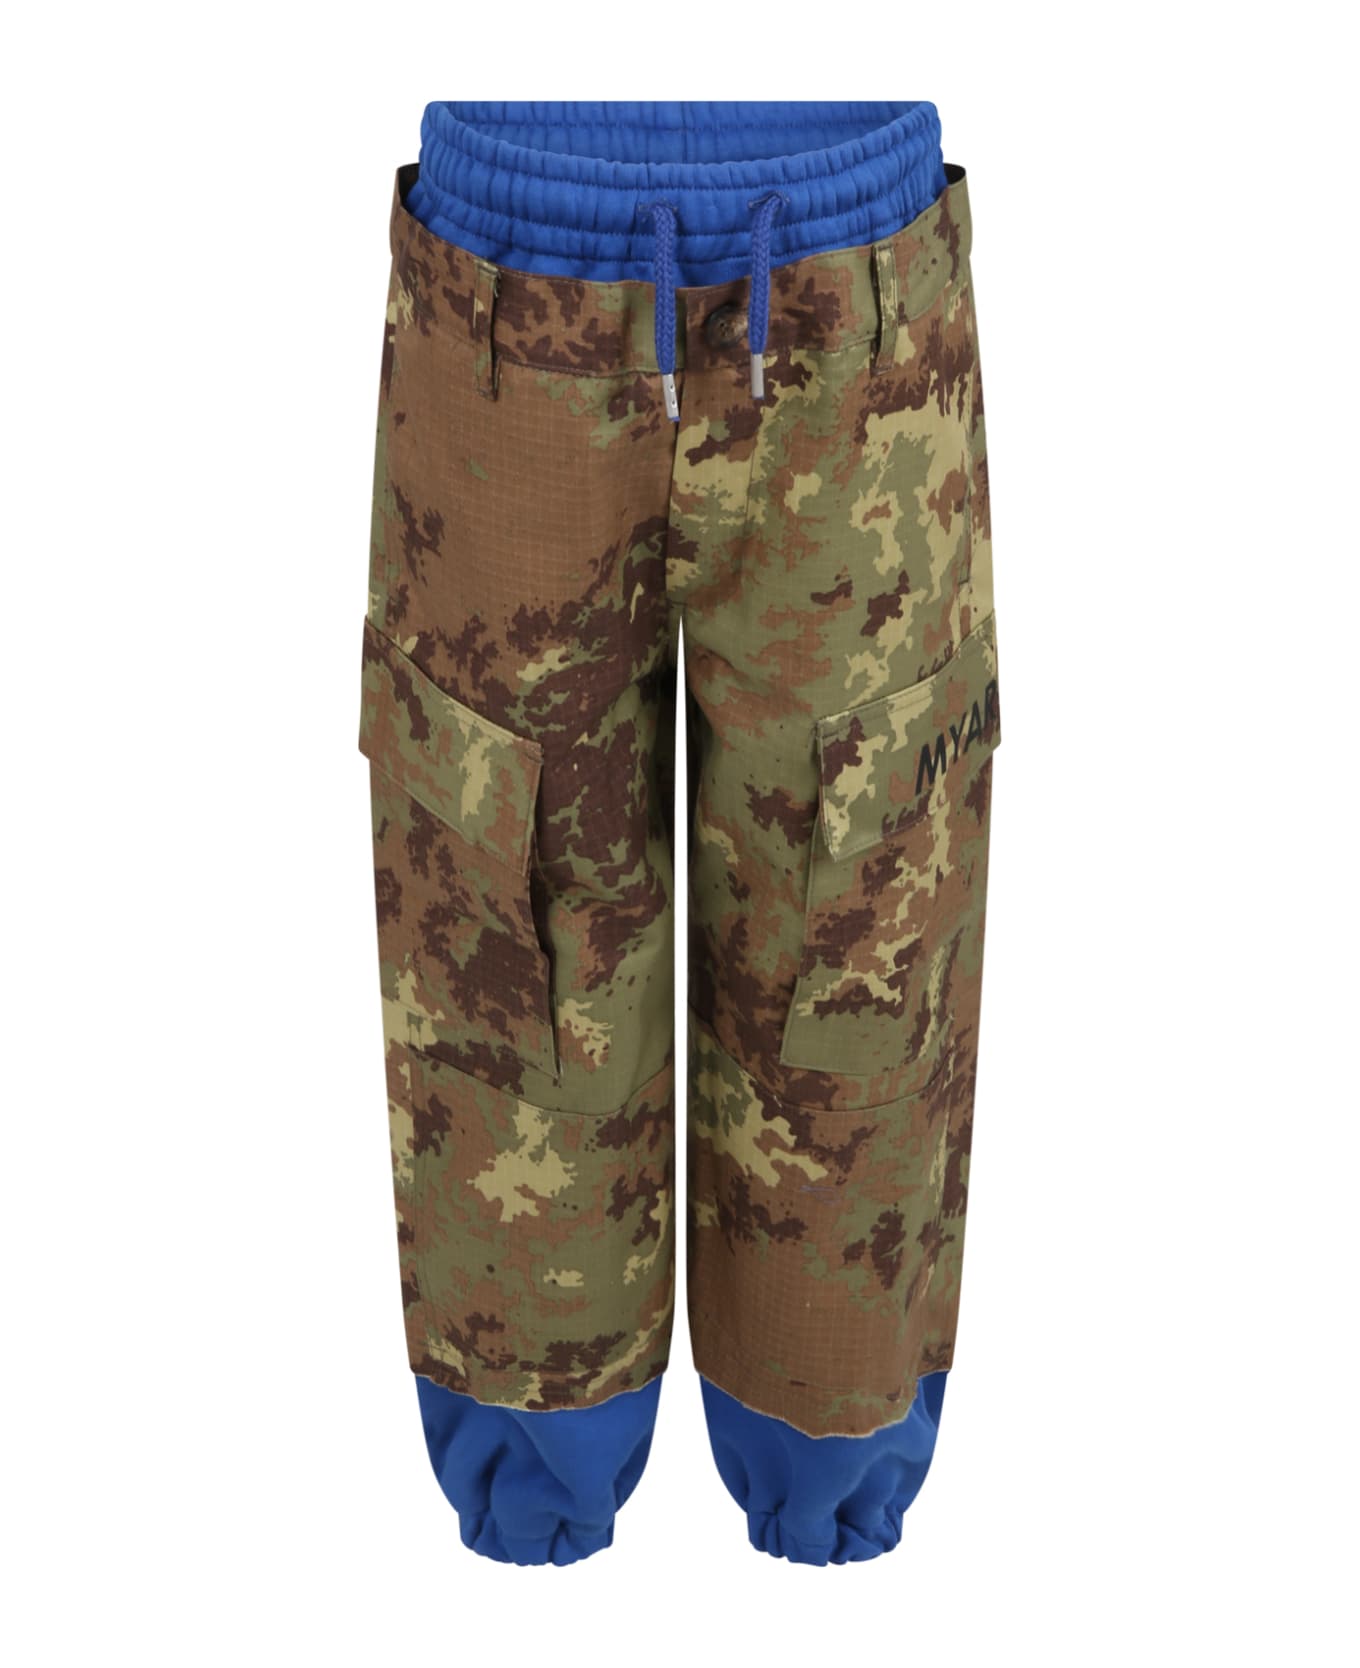 MYAR Multicolor Pants For Boy With Logo - Multicolor